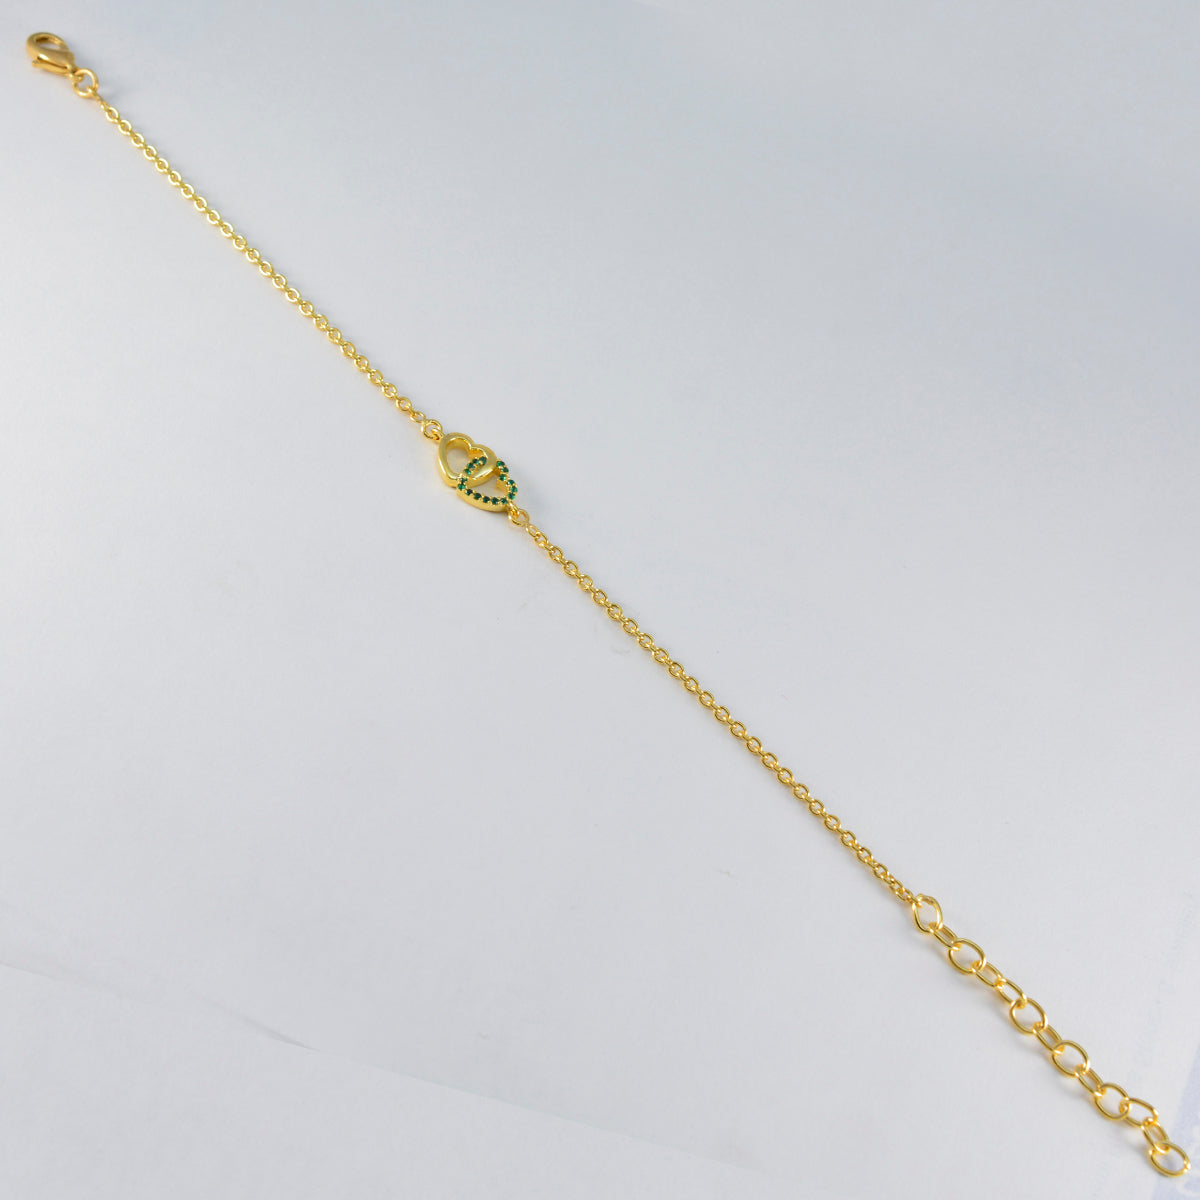 riyo vintage 925 пробы из стерлингового серебра с позолоченным браслетом для девочки изумрудный браслет из cz с безелем браслет с подвеской в виде рыбного крючка браслет l размер 6-8,5 дюймов.